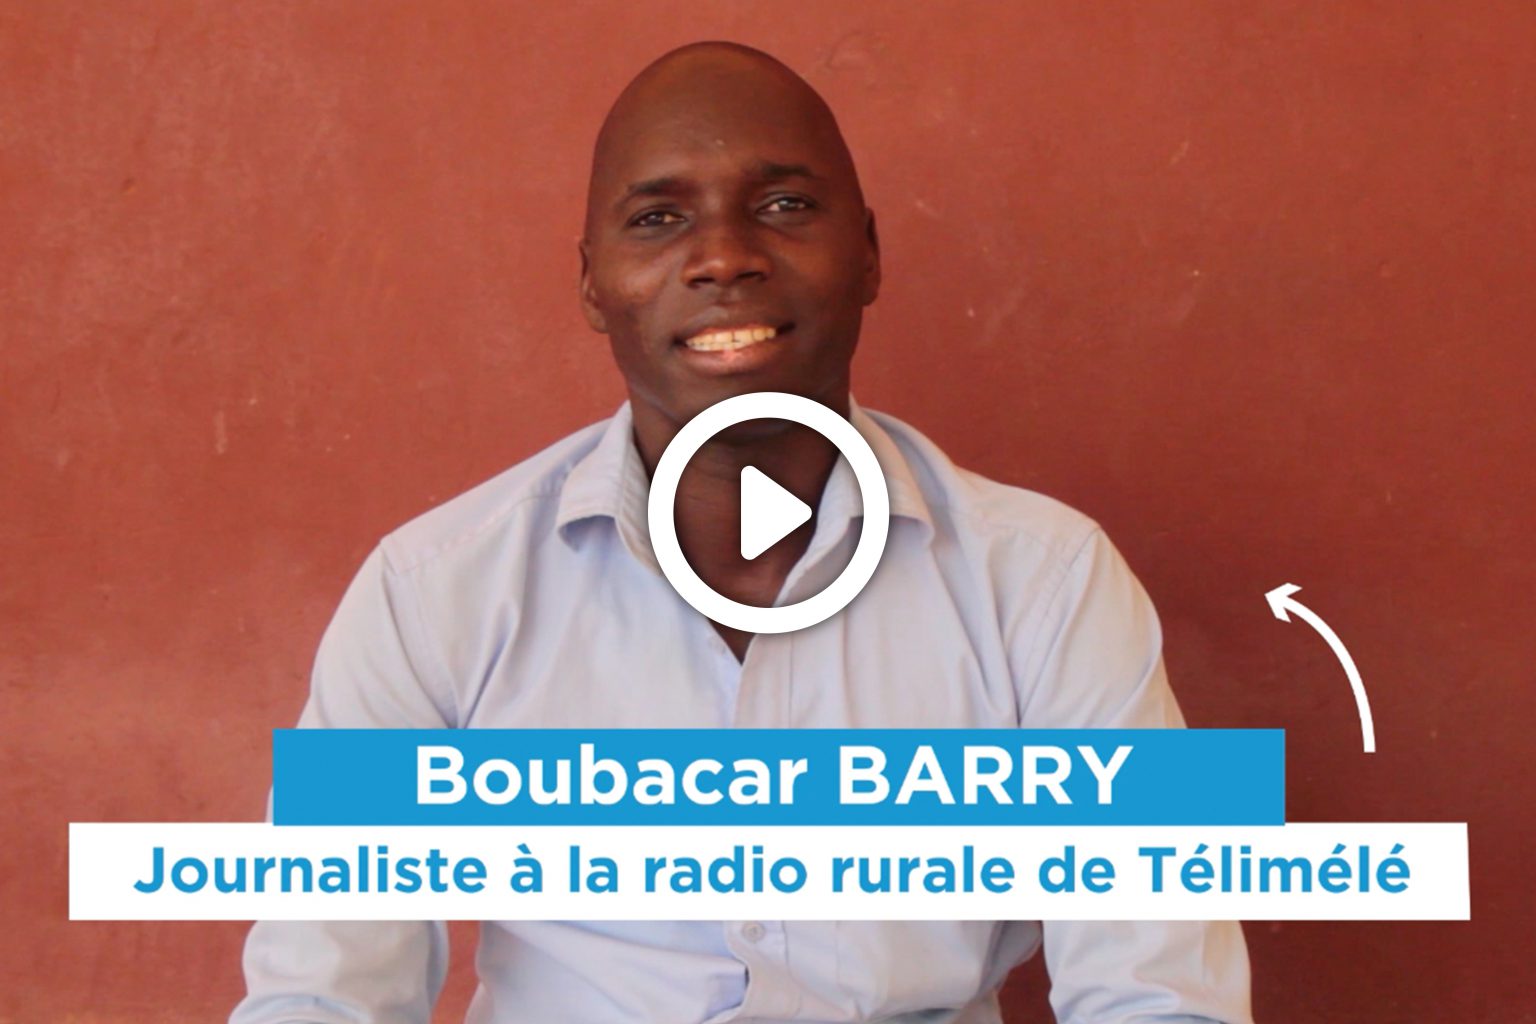 Barry Boubacar